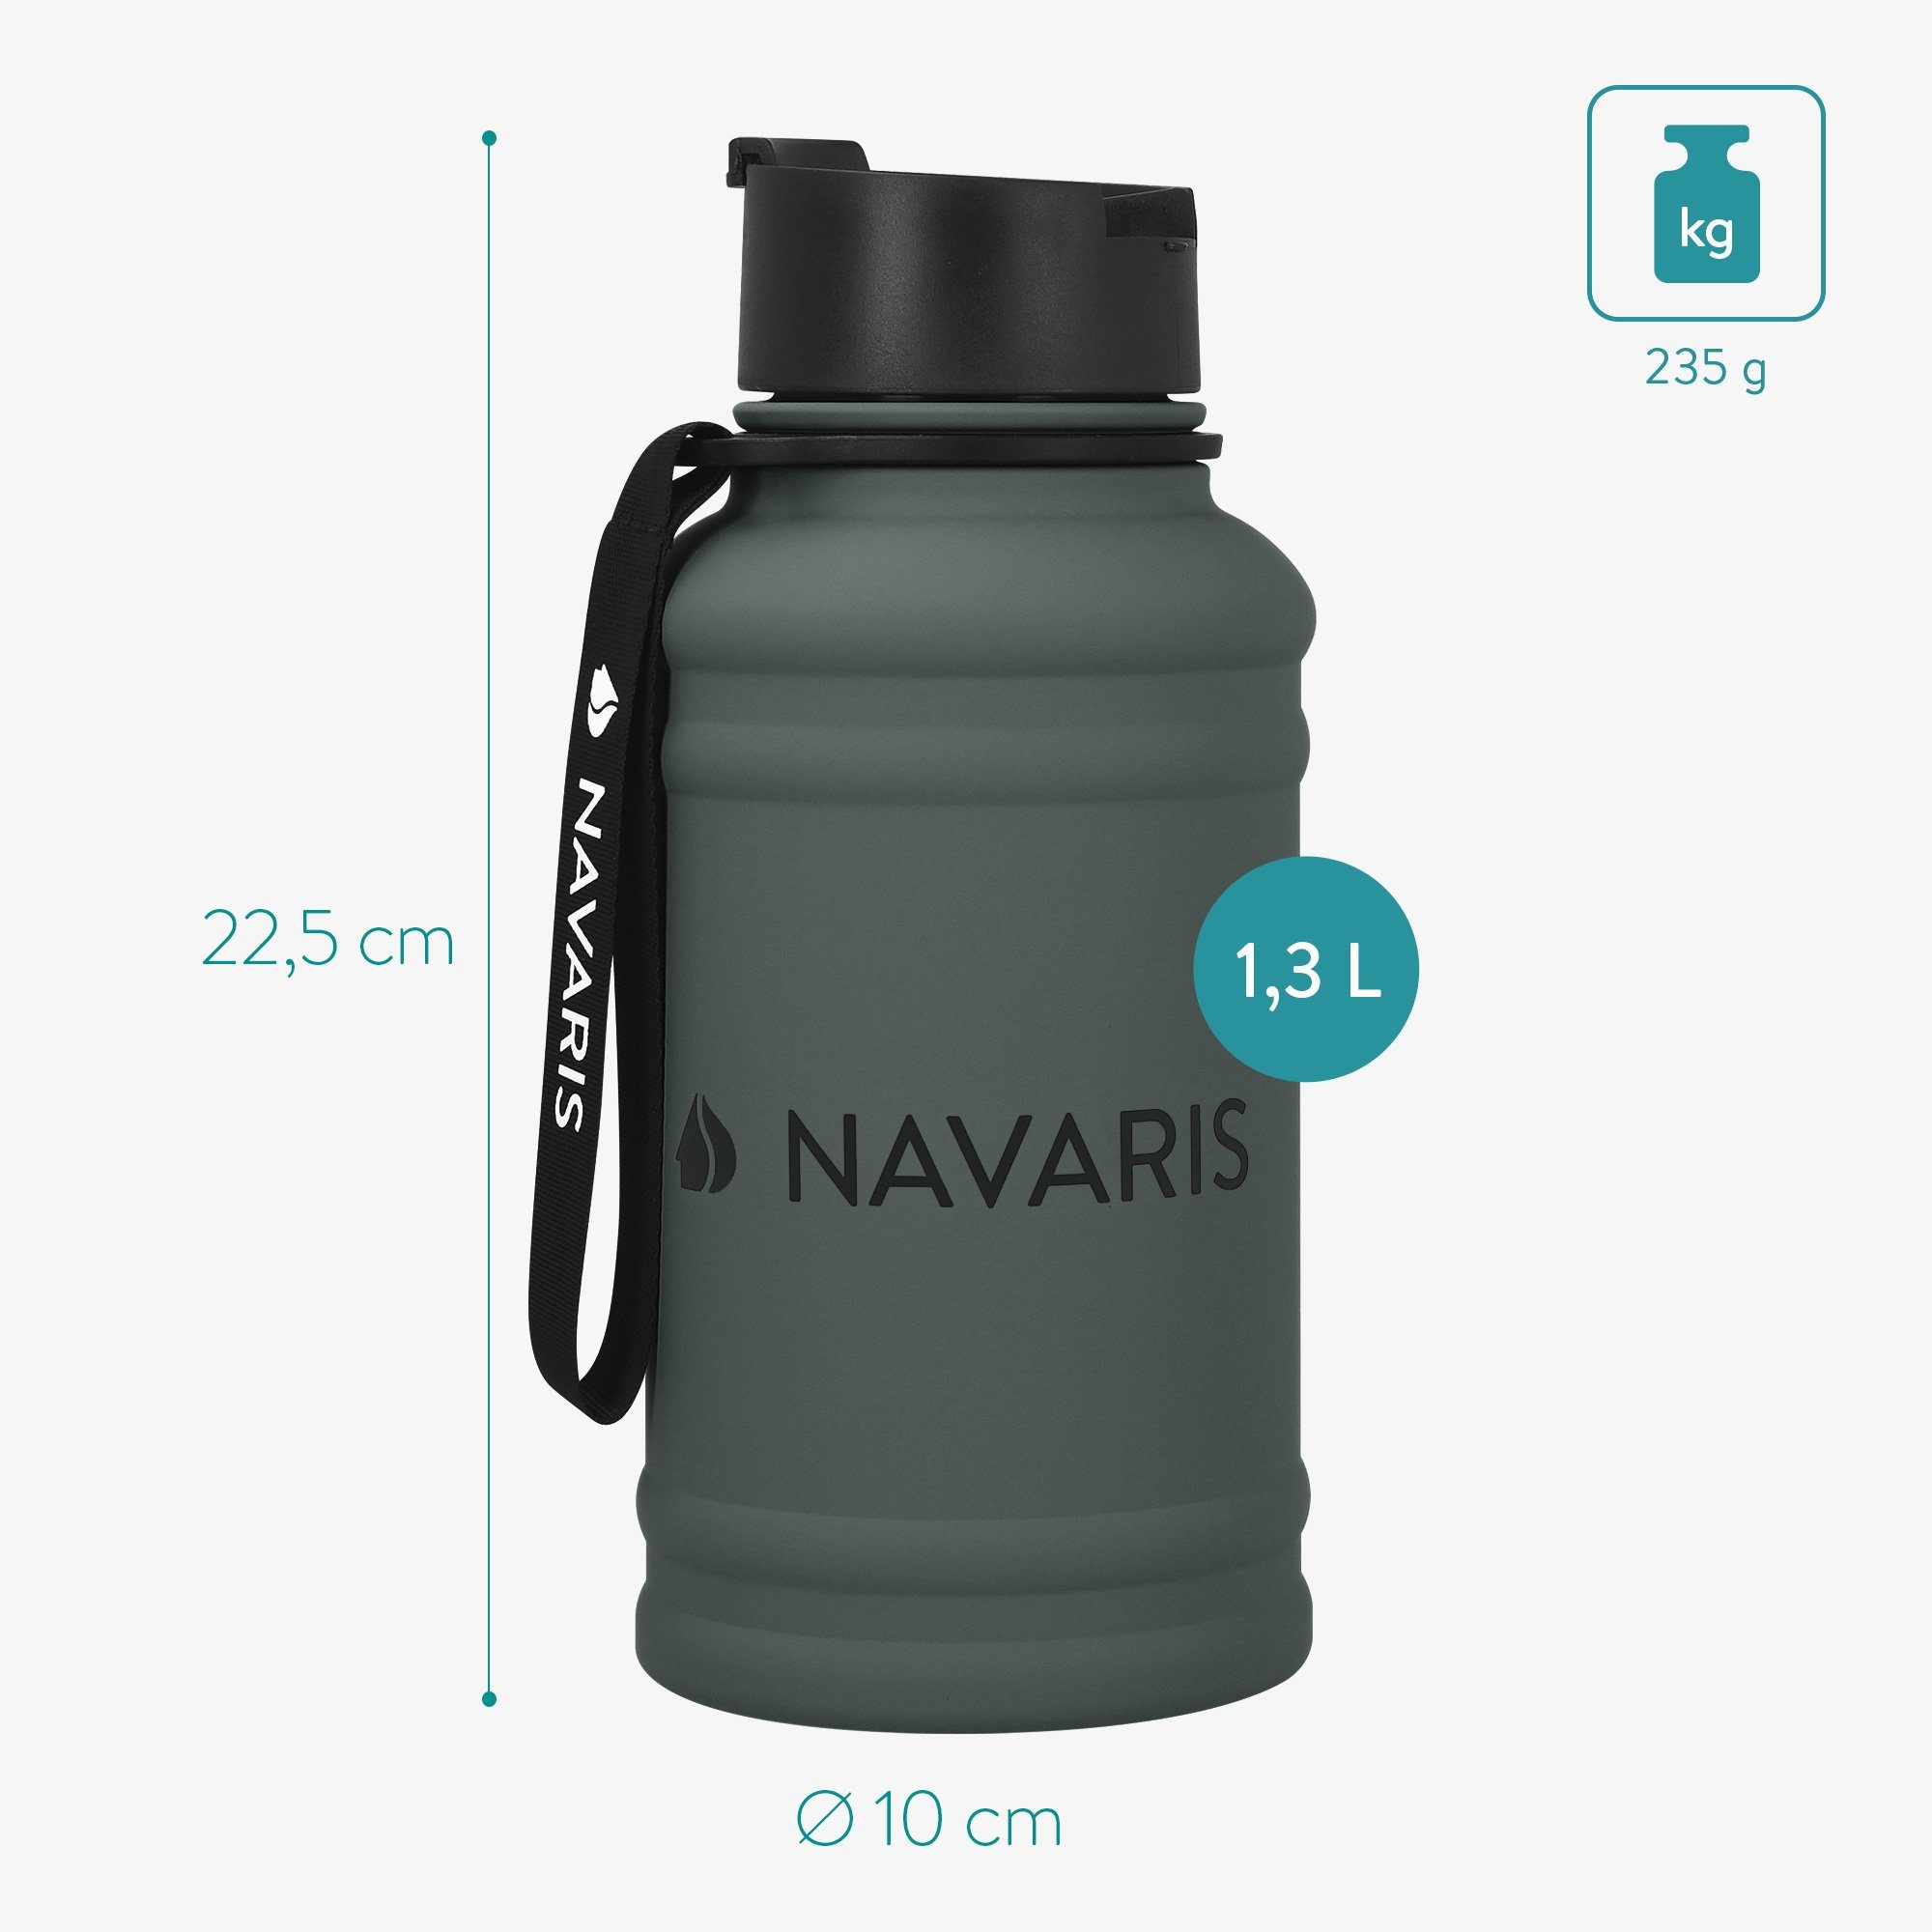 Gym Anthrazit Trinkflasche Flasche Liter Water - Jug 1,3 - Navaris Wasserflasche Bottle Sport